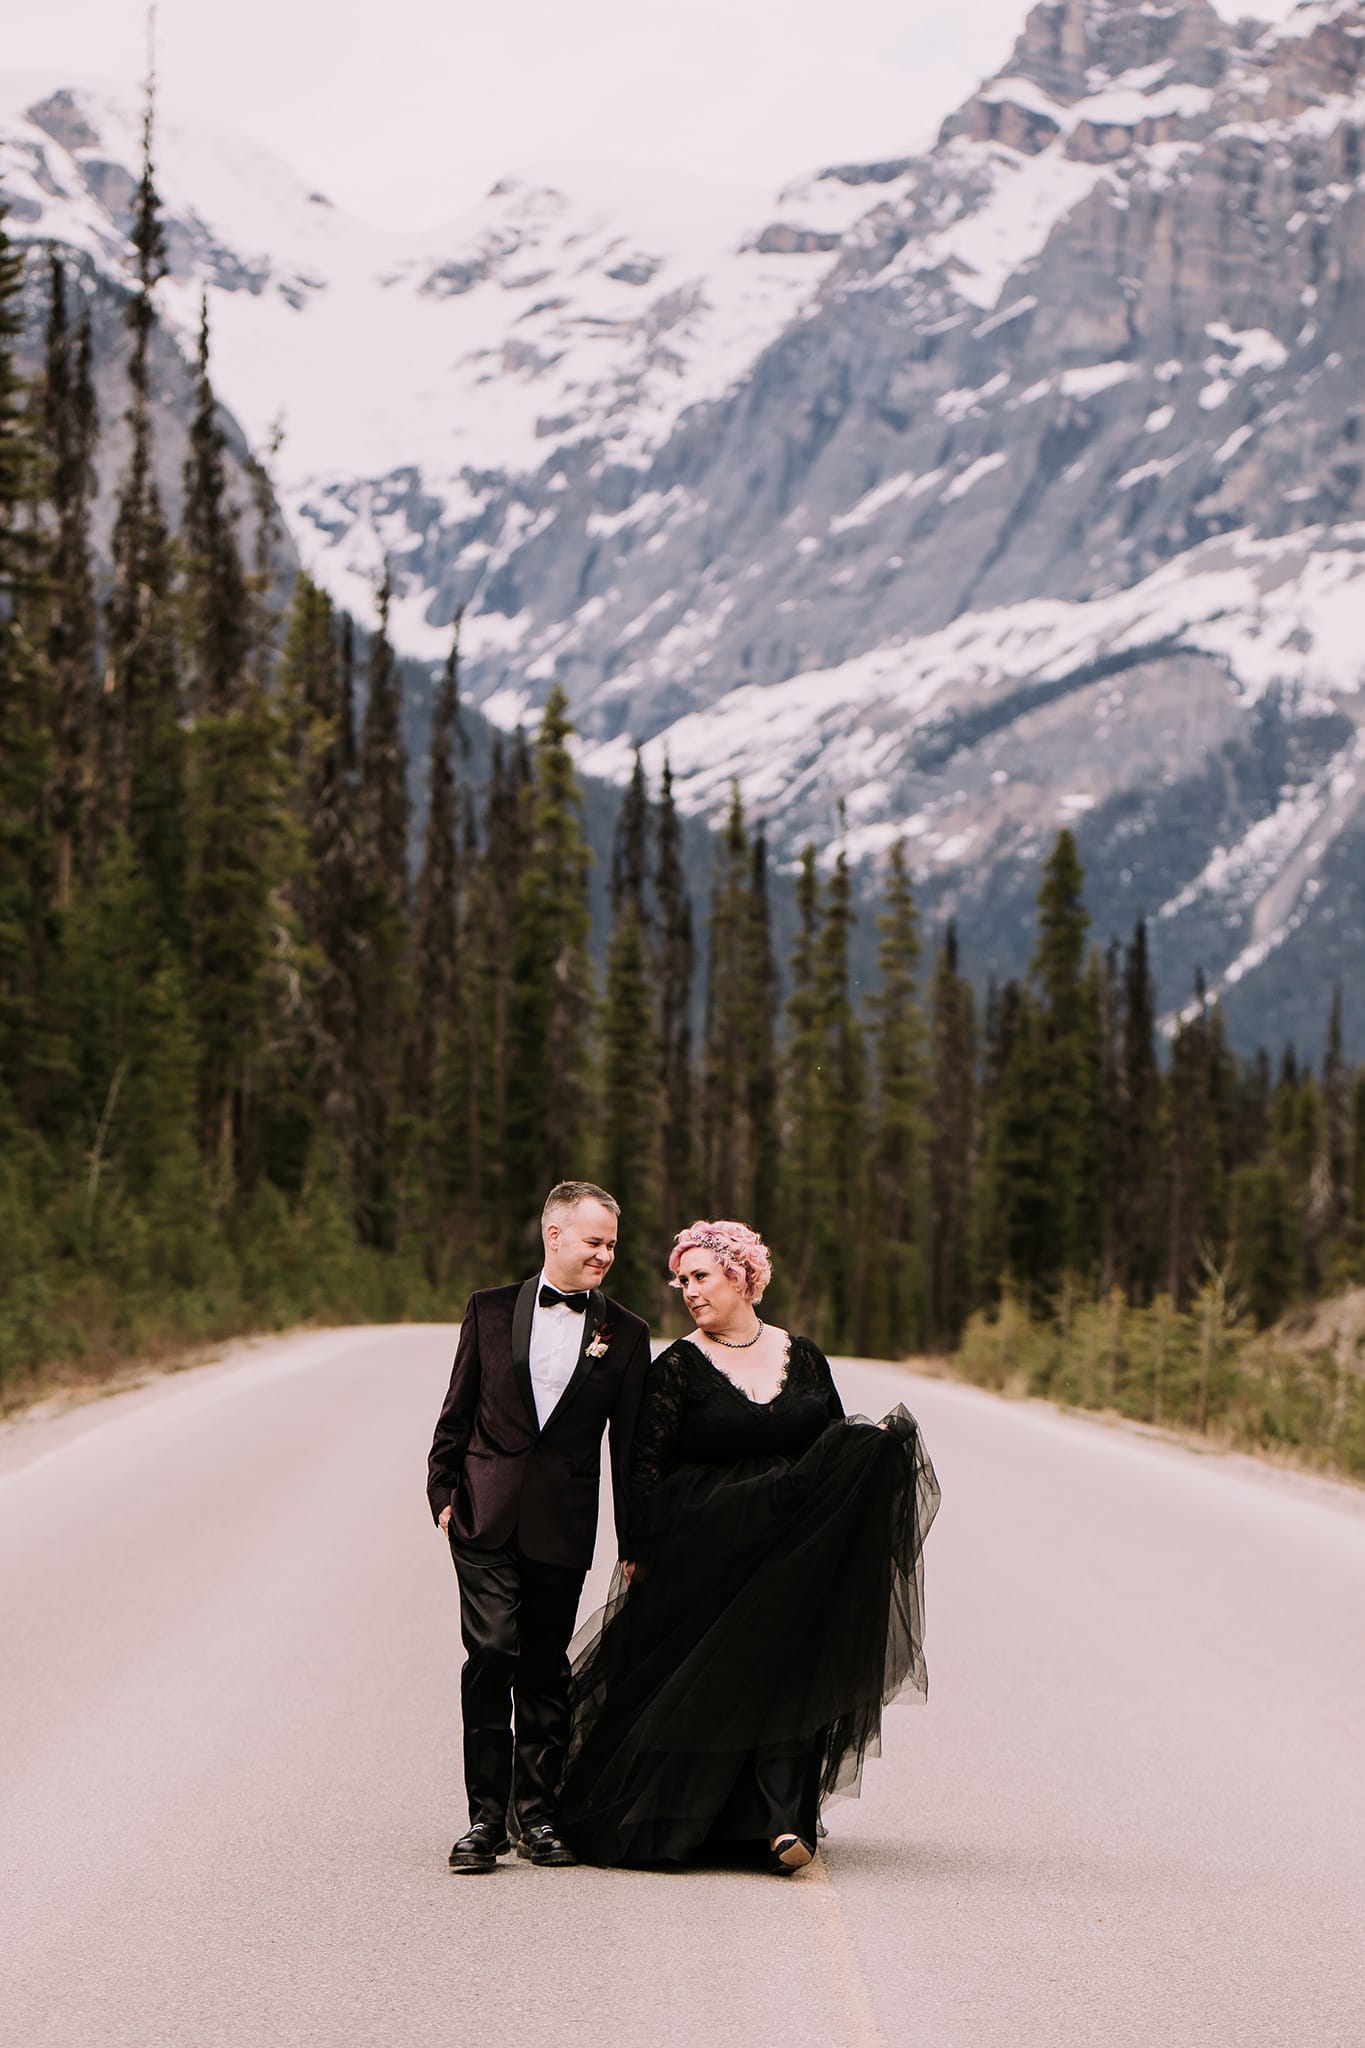 dark wedding inspiration in the mountains bride in black wedding ballgown